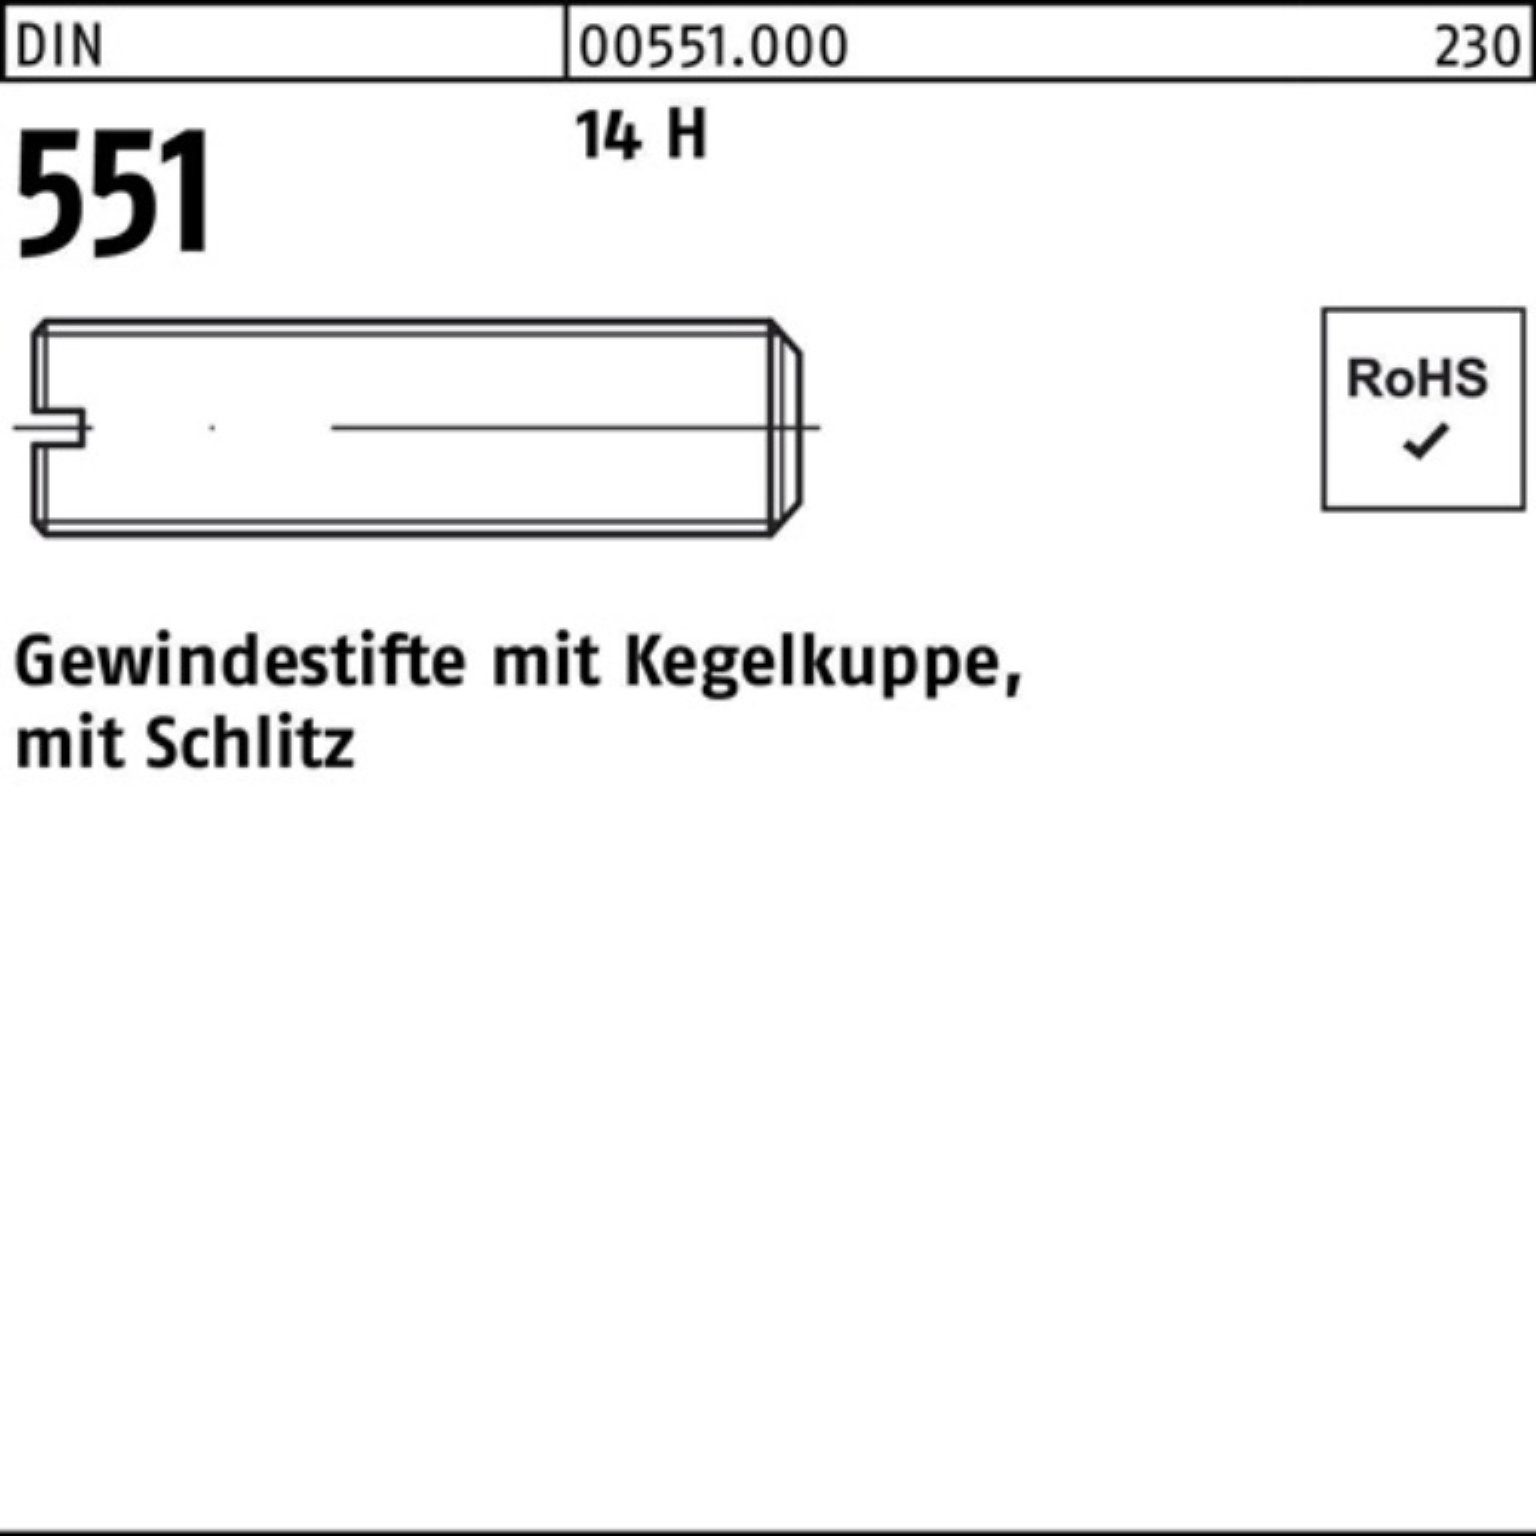 Reyher Gewindebolzen 1000er Gewindestift Pack Kegelkuppe/Schlitz M3x DIN 551 14 1000 H 3 St